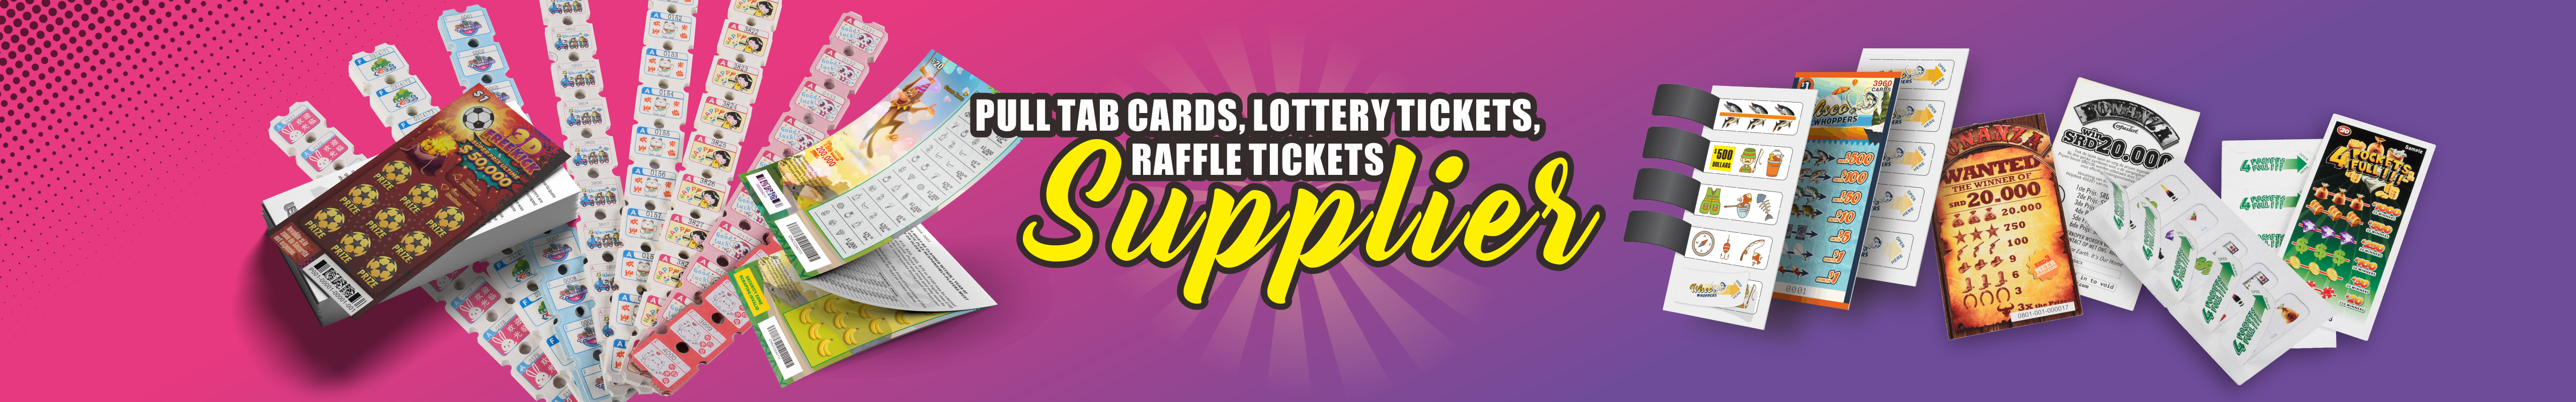 Gratta e Vinci | Biglietti della lotteria | Pull Tab Ticket Carte sigillo